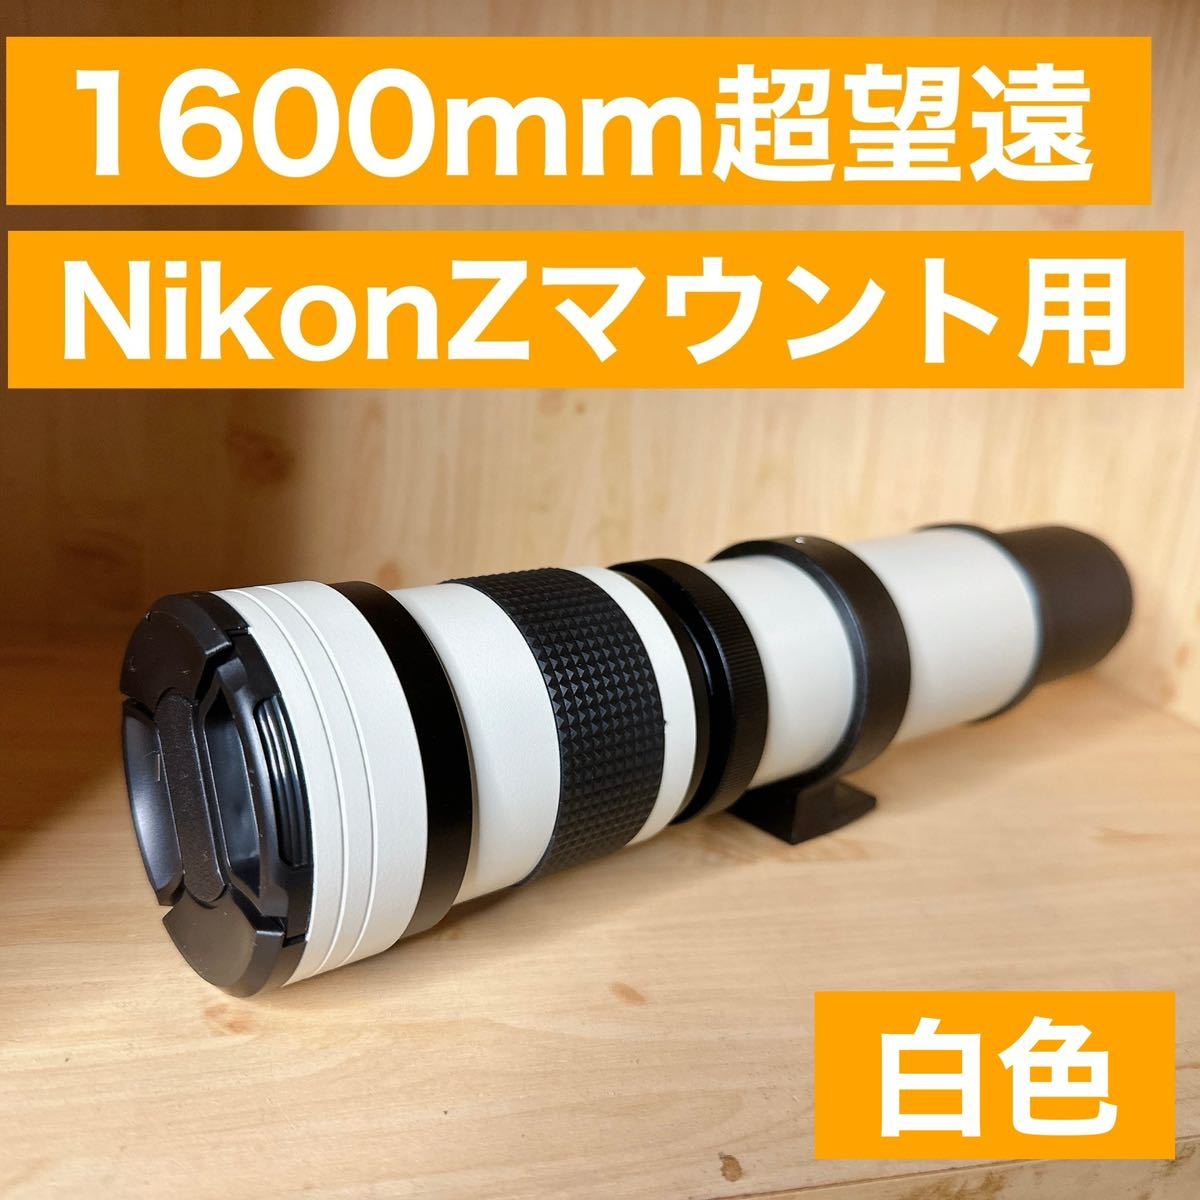 1600mm Nikon Zマウント用！超望遠レンズ！ミラーレスカメラに！遠くが